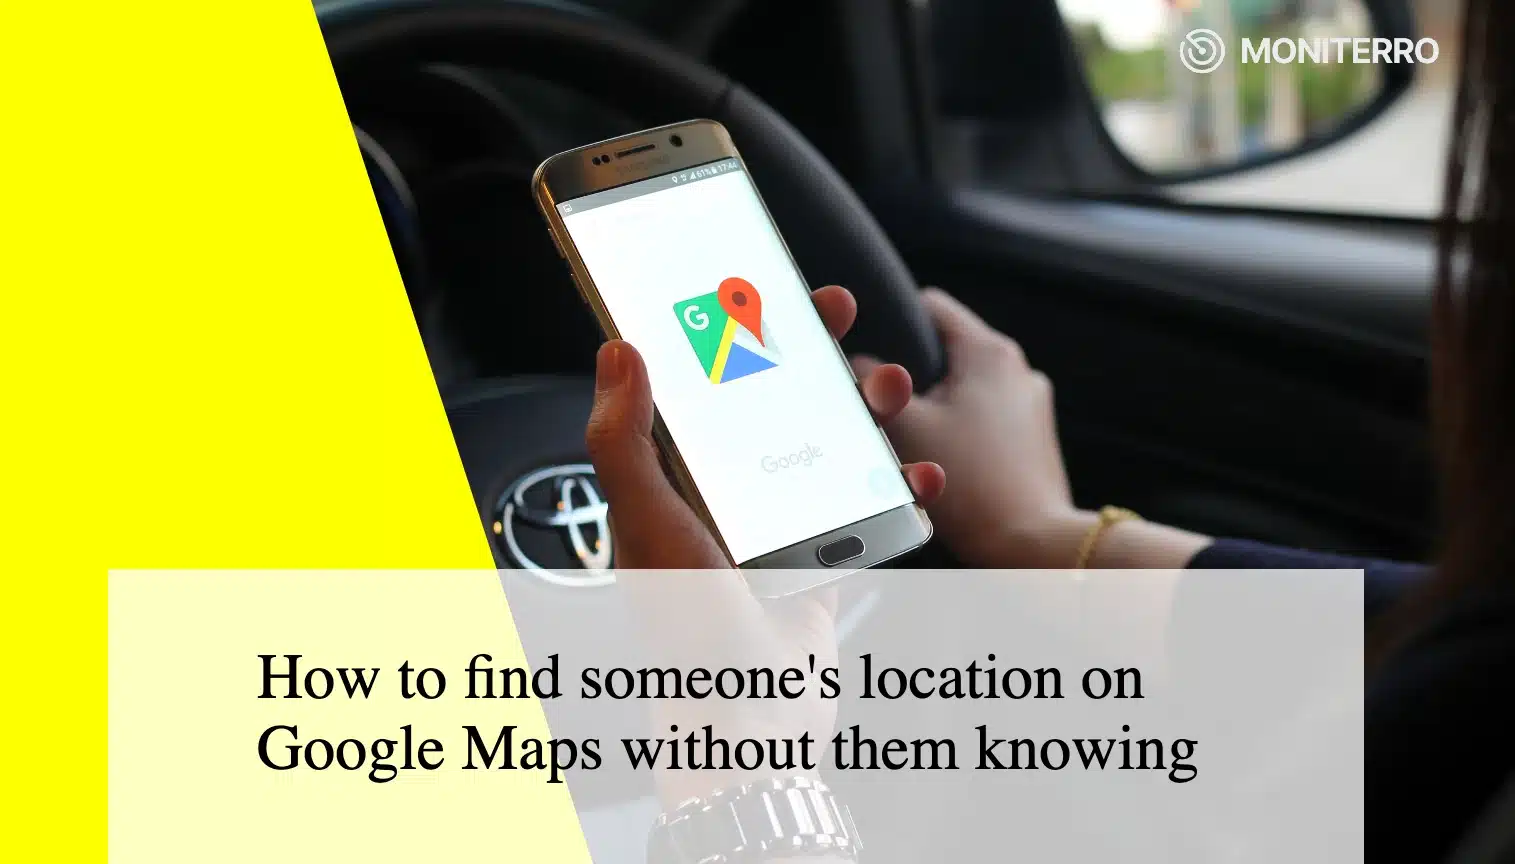 Jak znaleźć czyjąś lokalizację w Mapach Google bez wiedzy tej osoby?